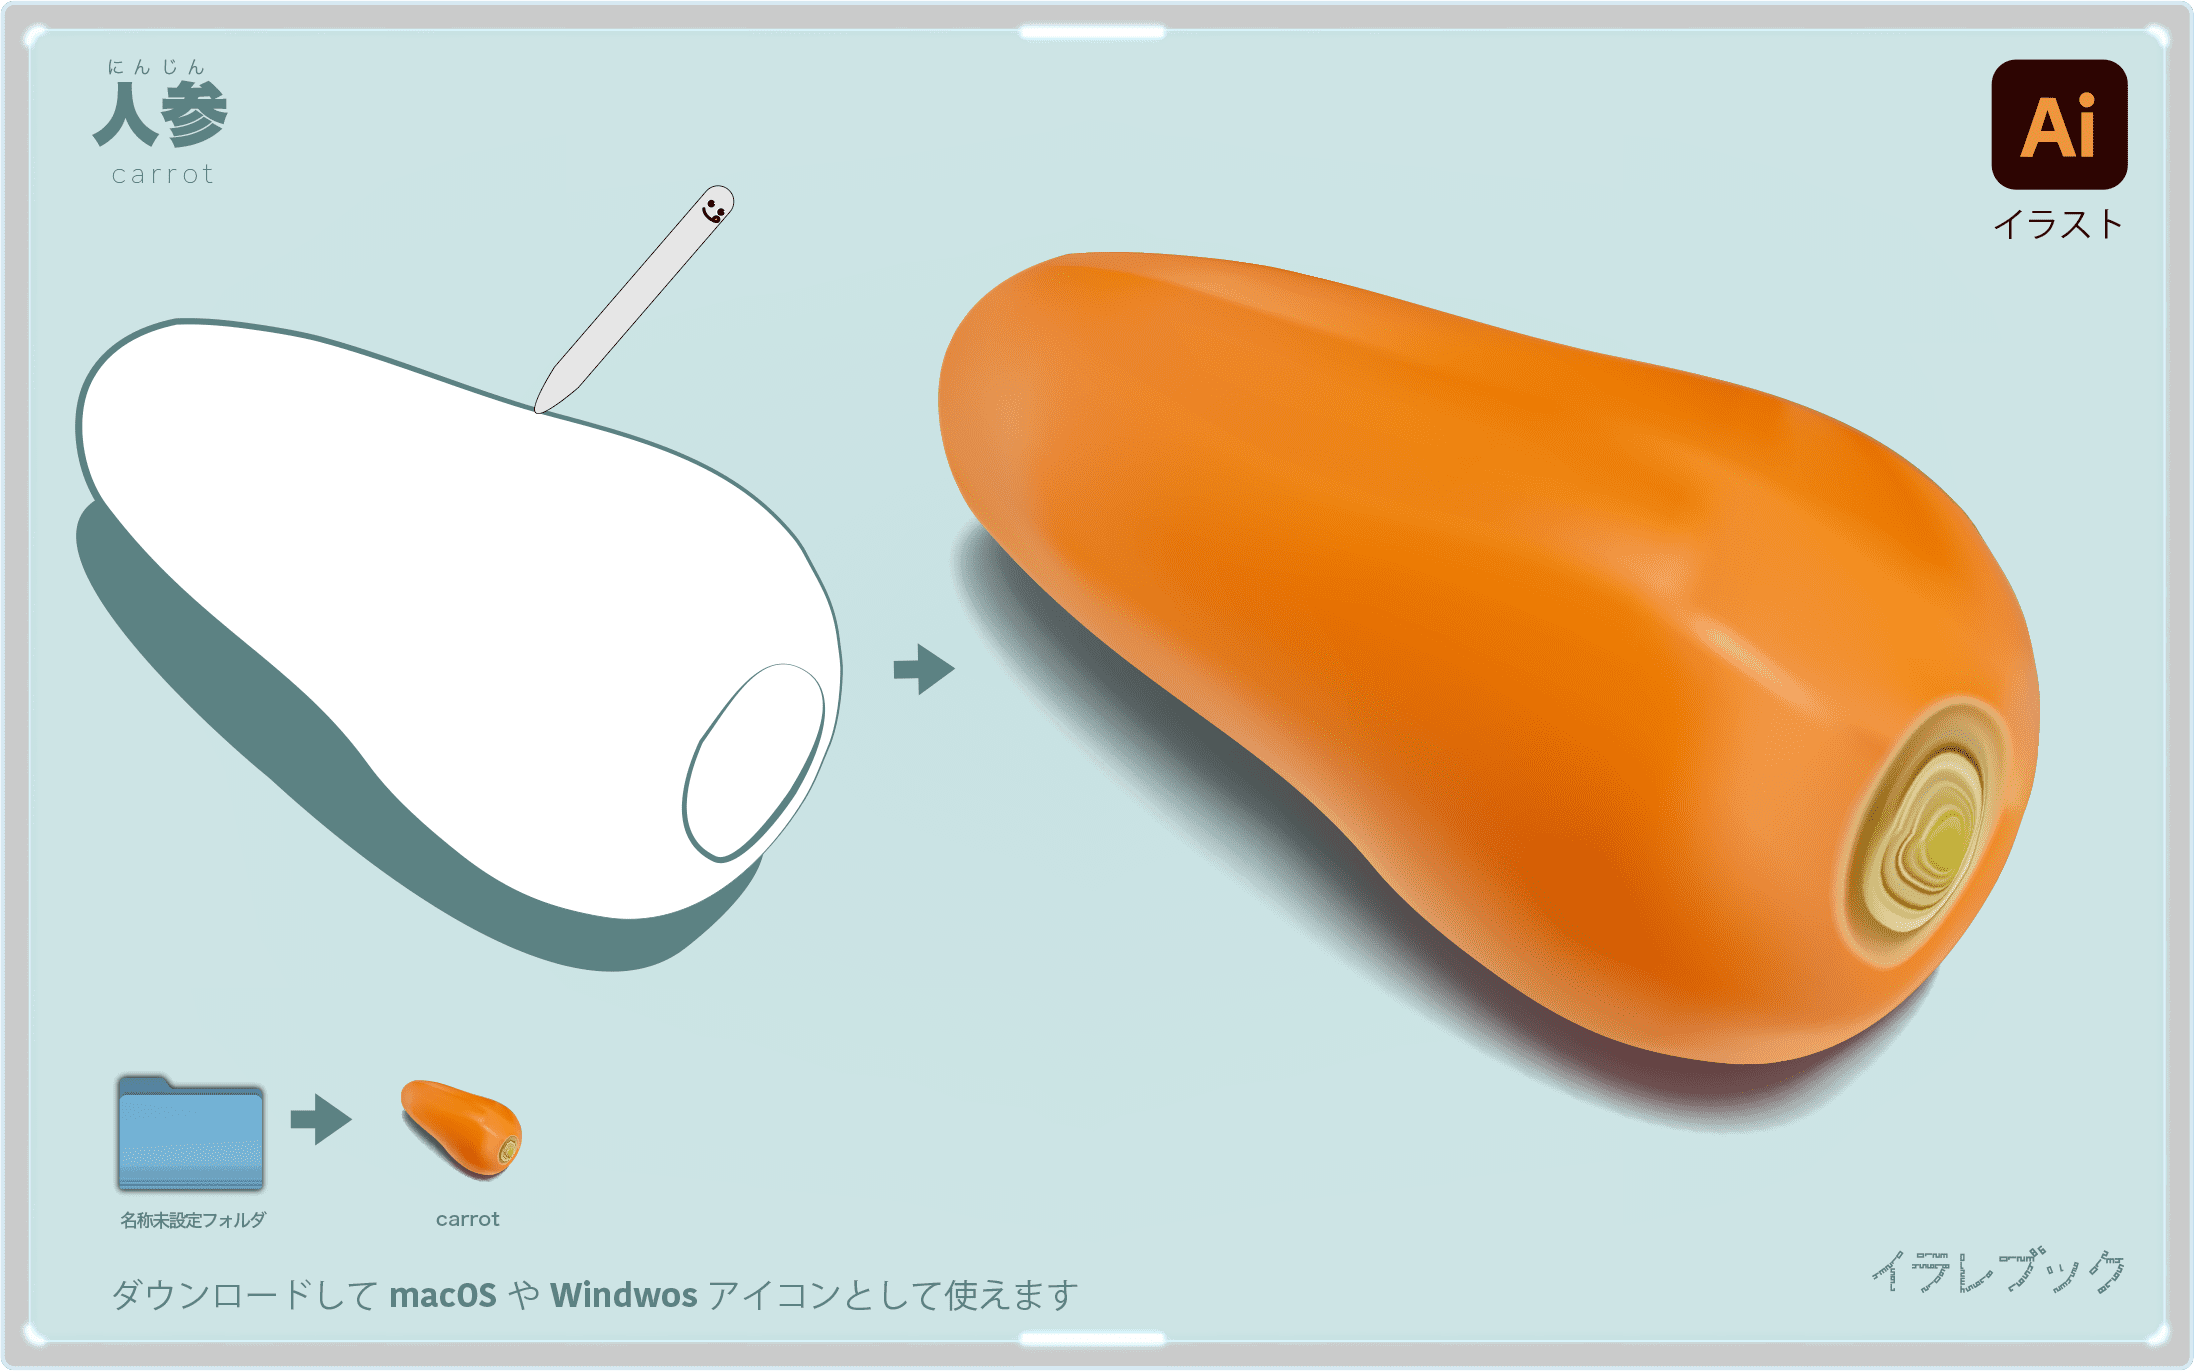 にんじん 実は花粉症に効く 粘膜が最強になるbカロテンパワー Carrot